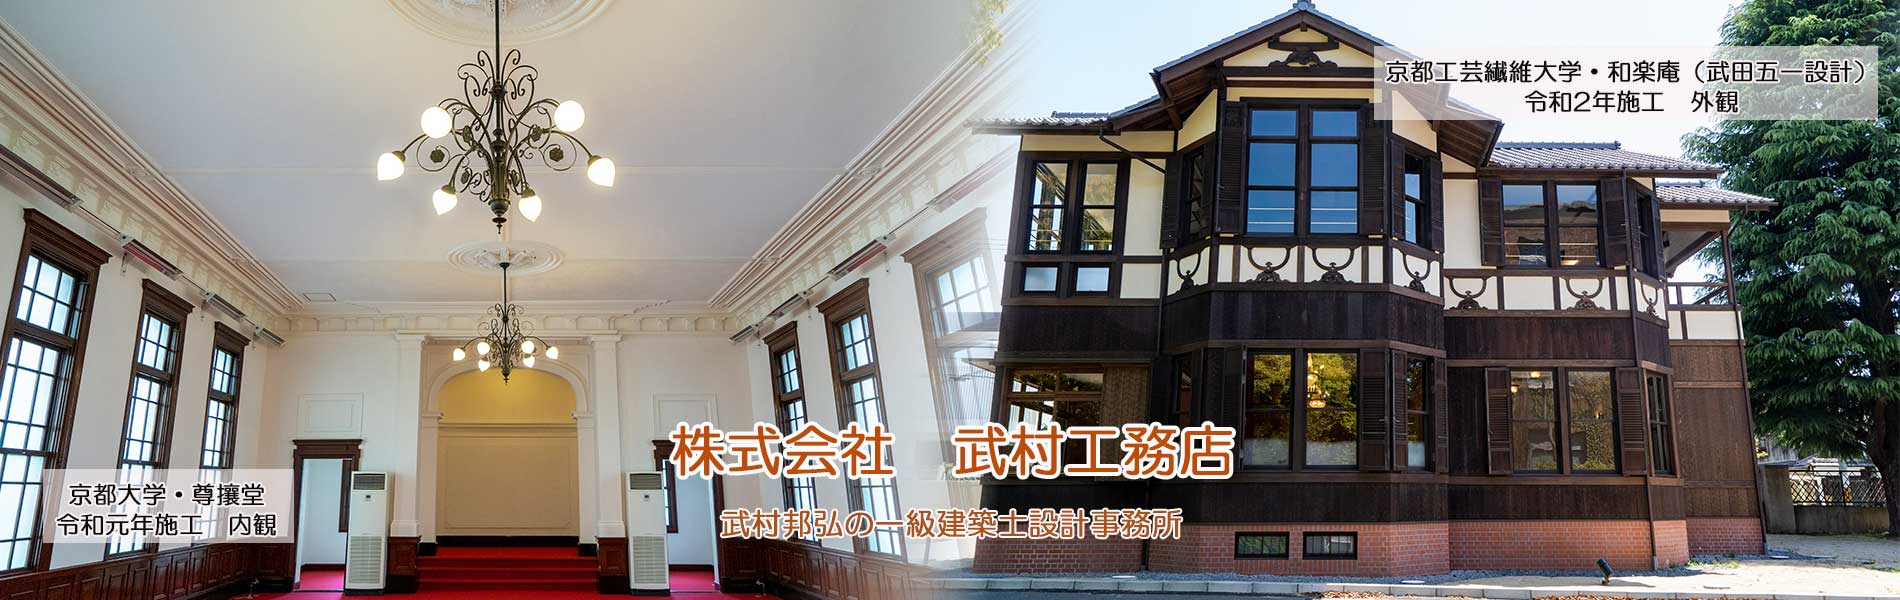 社寺・仏閣・文化財、京町家、一般住宅・リノベーション、介護保険住宅改修は実績豊富な京都市の武村工務店までご相談ください。